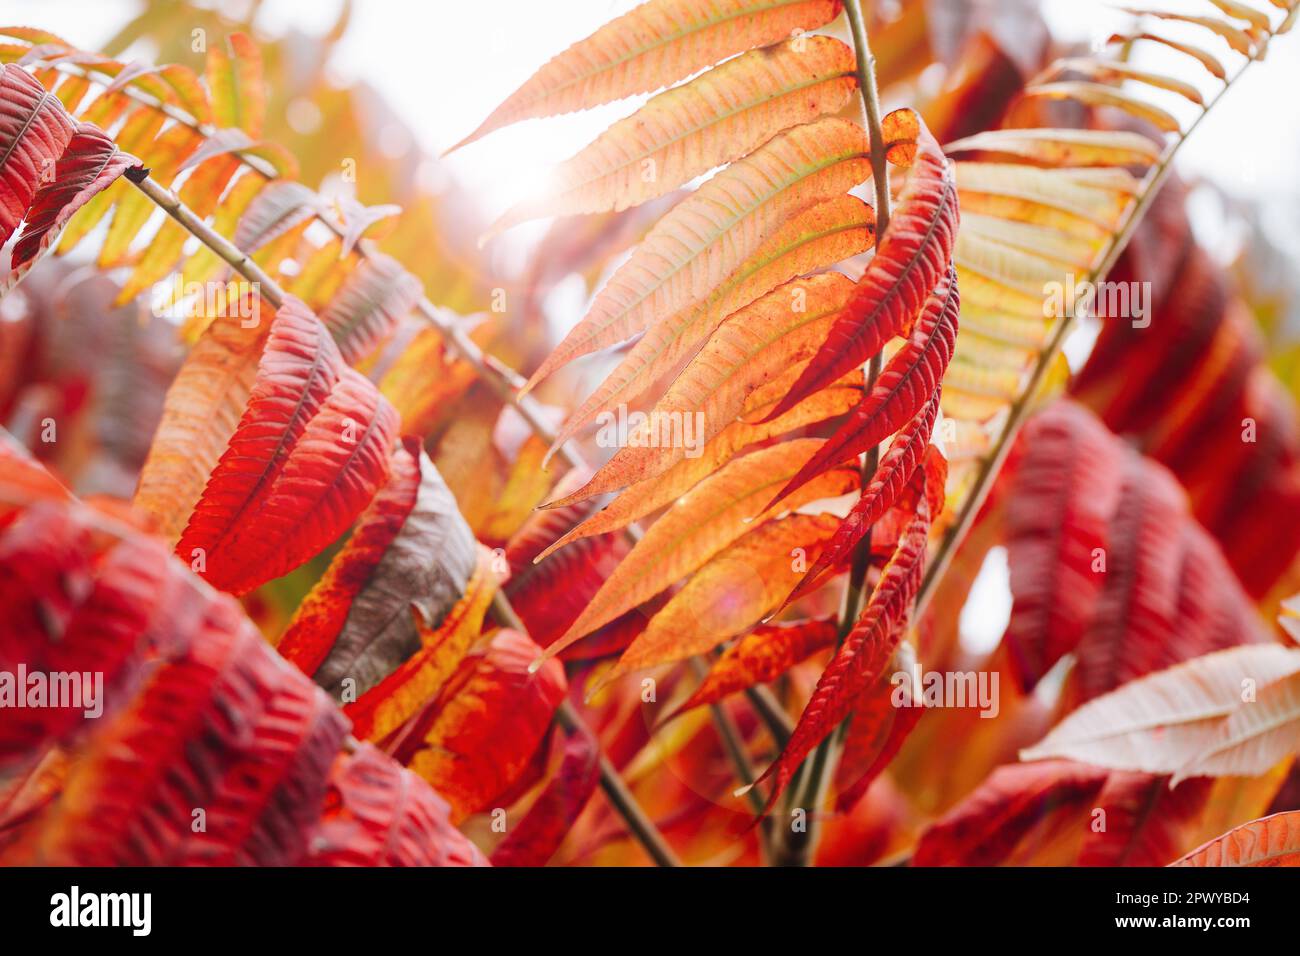 Essigbaum als farbenfroher, landschaftlich schöner Herbsthintergrund, auch als Hirschbutt Sumac lateinischer Name Rhus typhina und Rhus hirta bezeichnet. Stockfoto